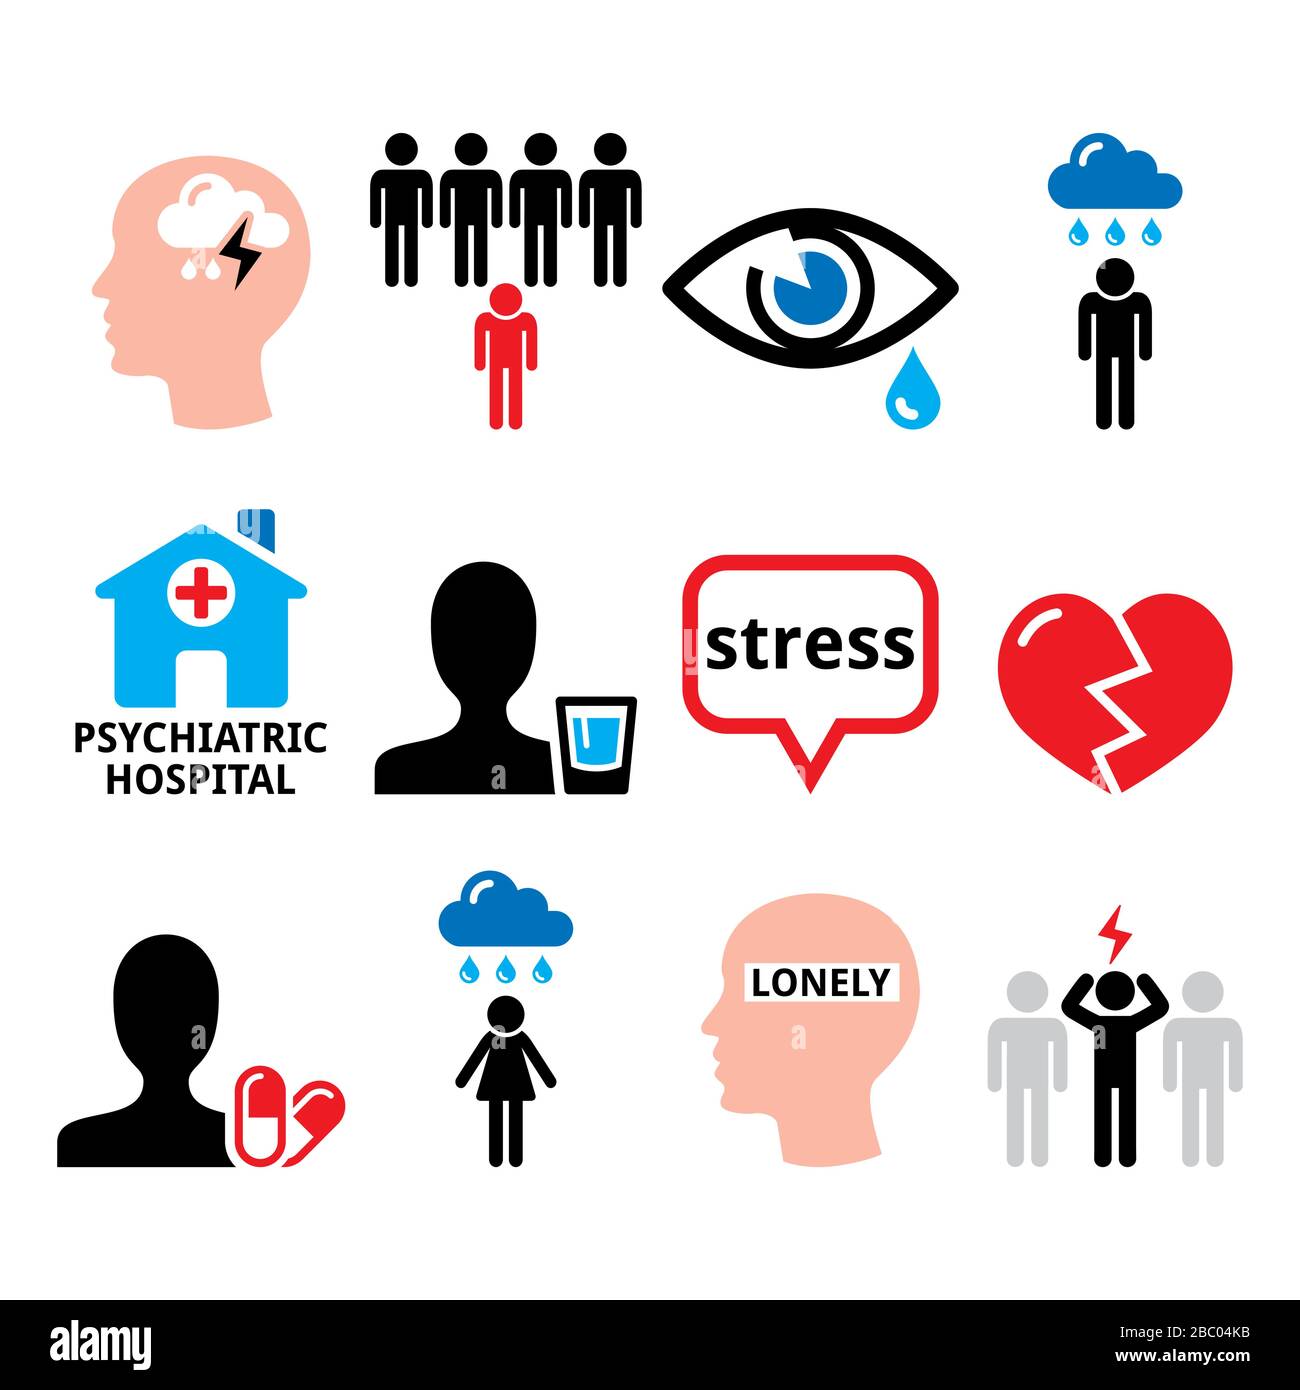 Depression, Stress, Angstvektor-Symbole gesetzt - Konzept für psychische Gesundheit, depressive Poeple-Design Stock Vektor